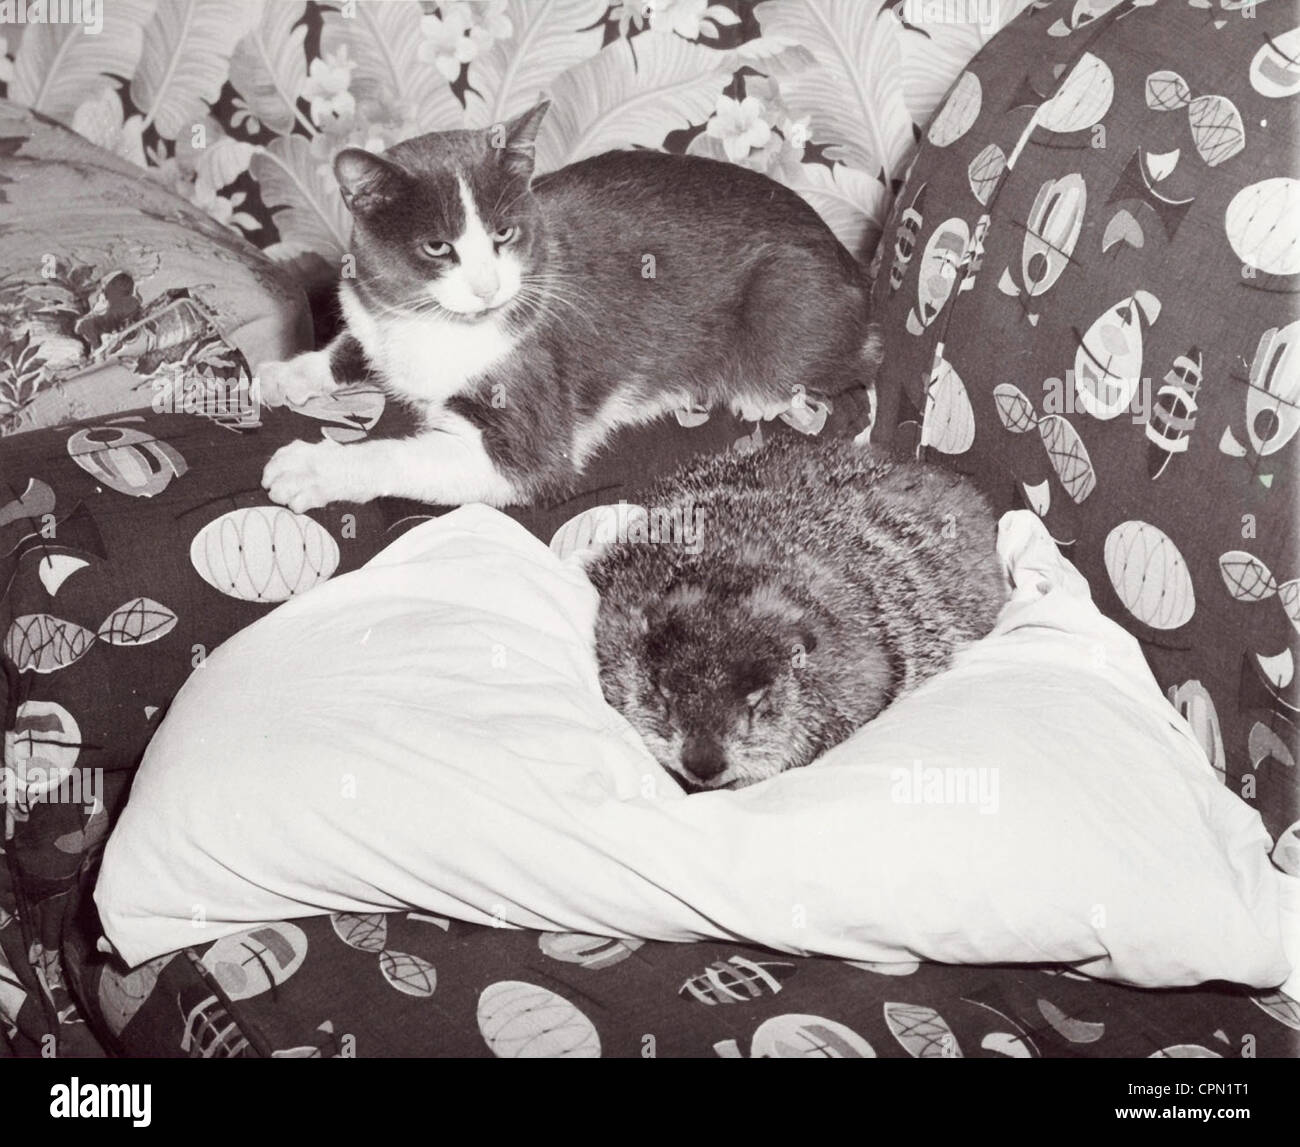 Cat & marmotte commune sieste ensemble Banque D'Images